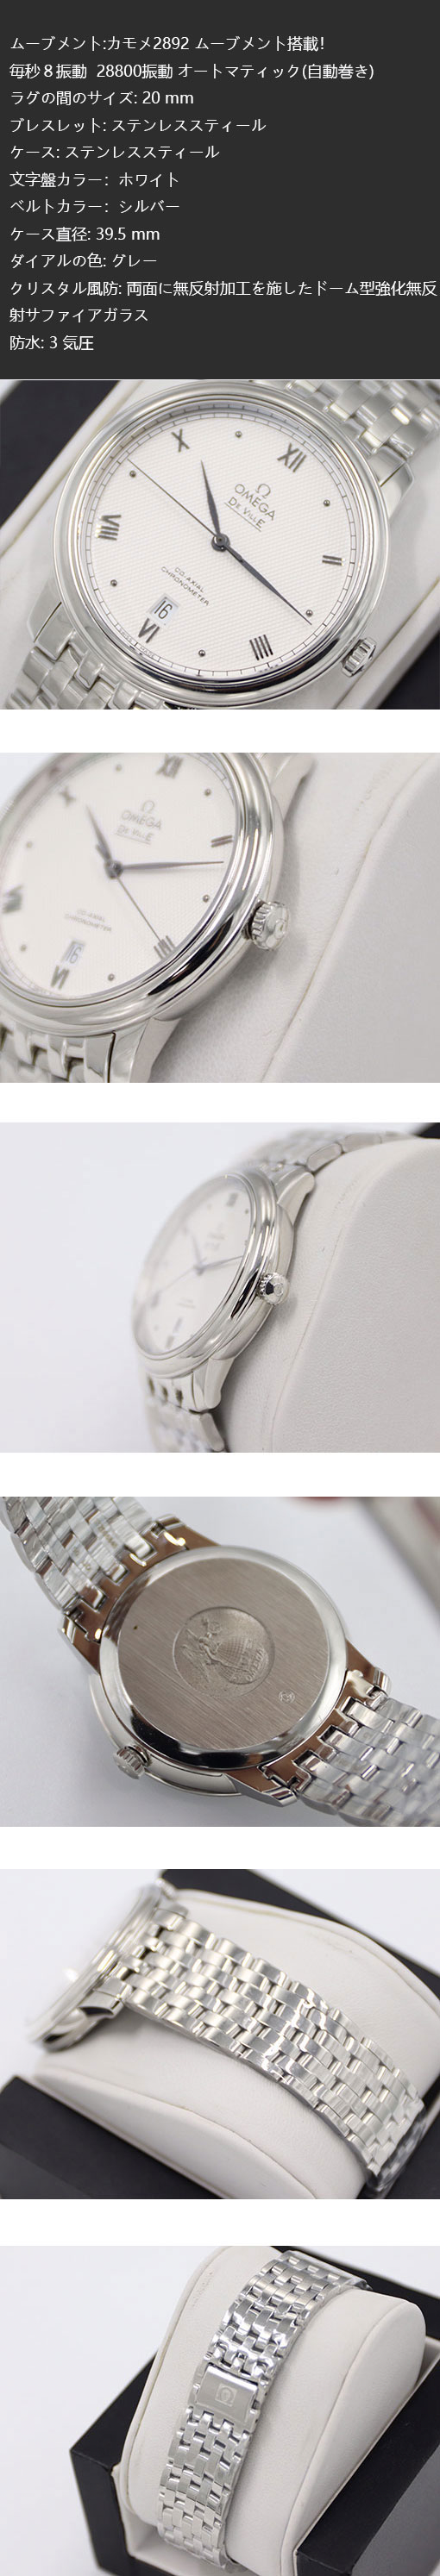 【ホワイト】オメガ コピー時計 デ・ヴィル プレステージ コーアクシャル 424.10.40.20.01.002 